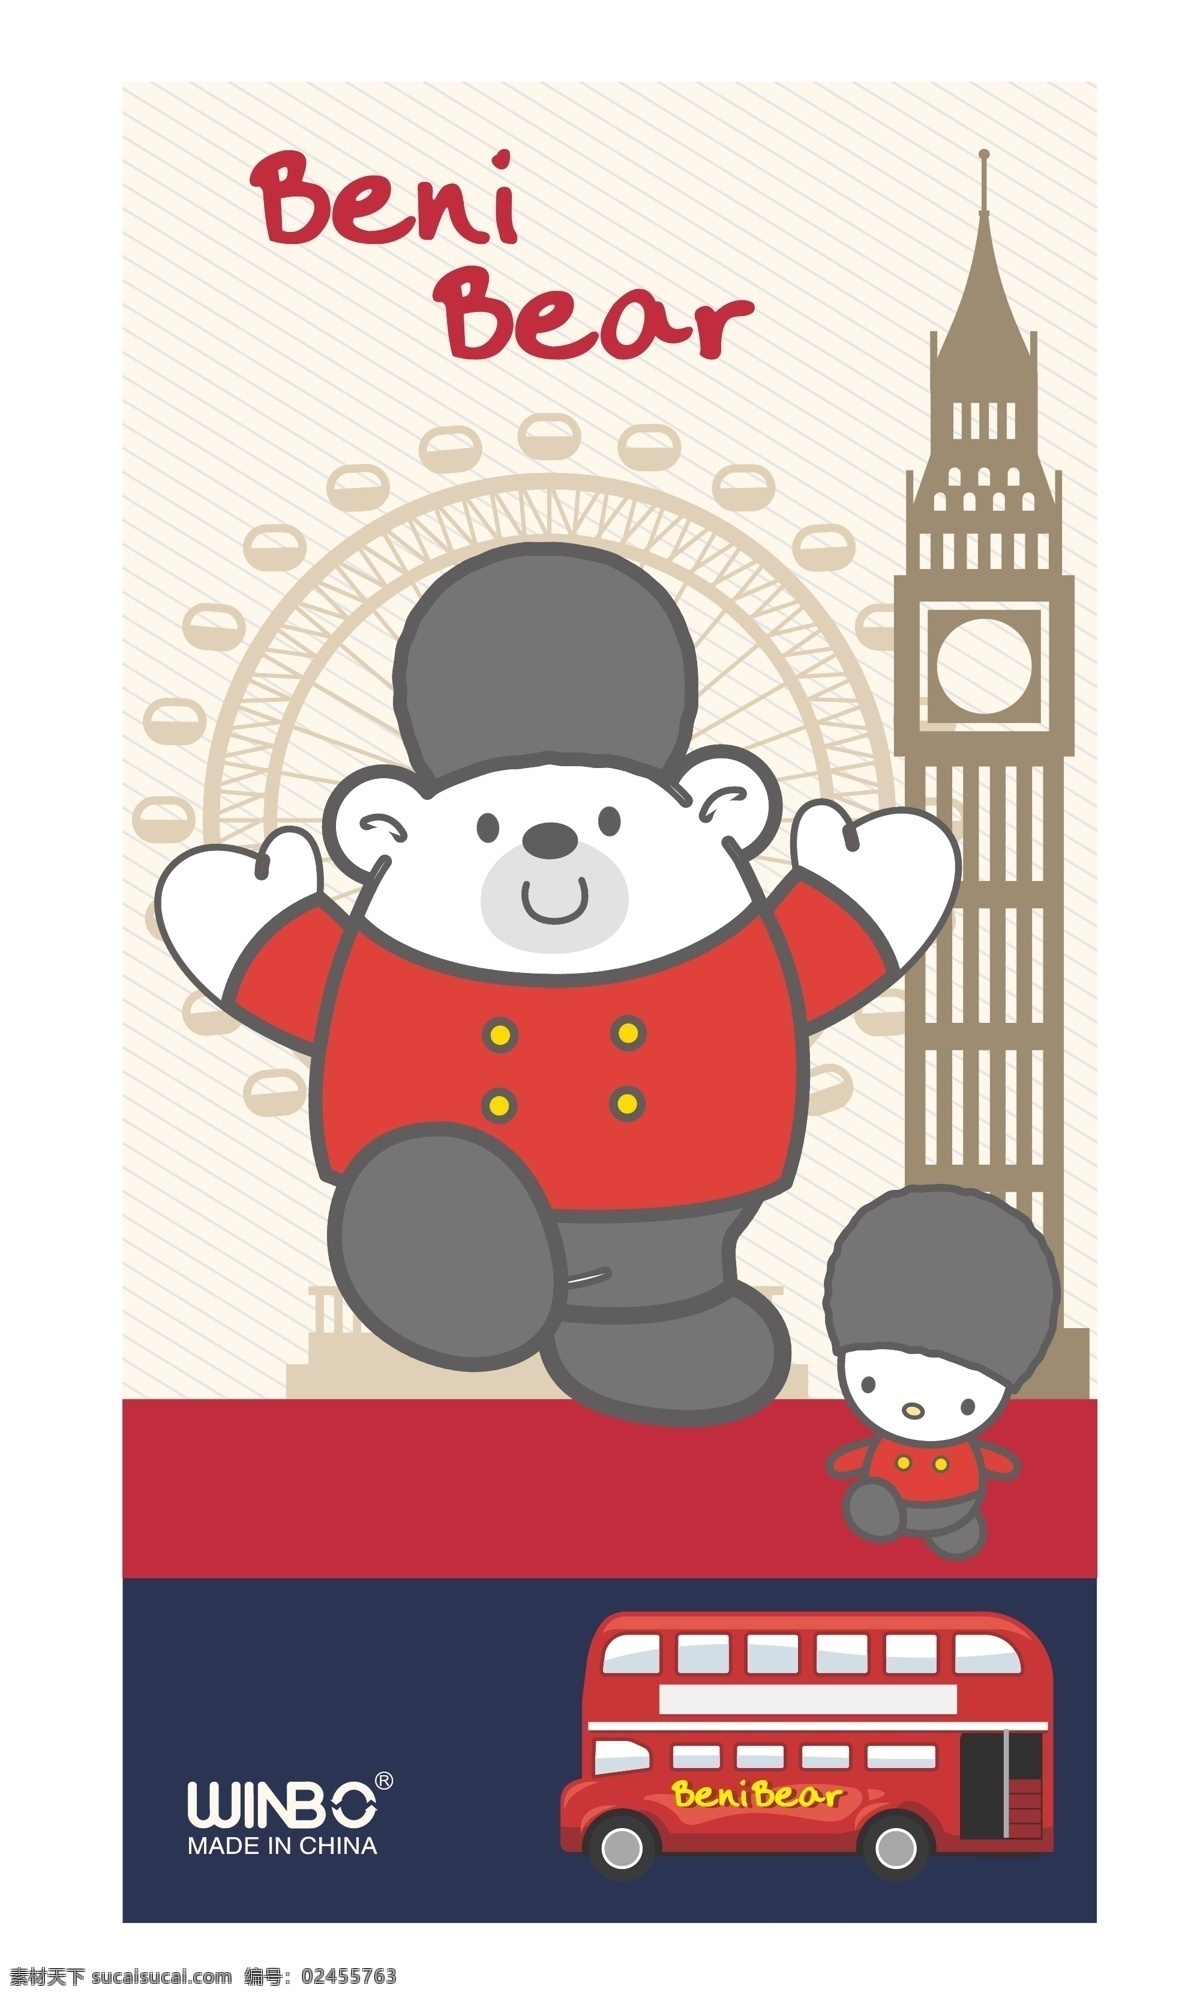 bear beni 邦尼熊 英国 英伦风 摩天伦 英国大本钟 车子 英国公汽 卡通公汽 卡通 动漫 人物 线条 矢量素材 动漫动画 动漫人物